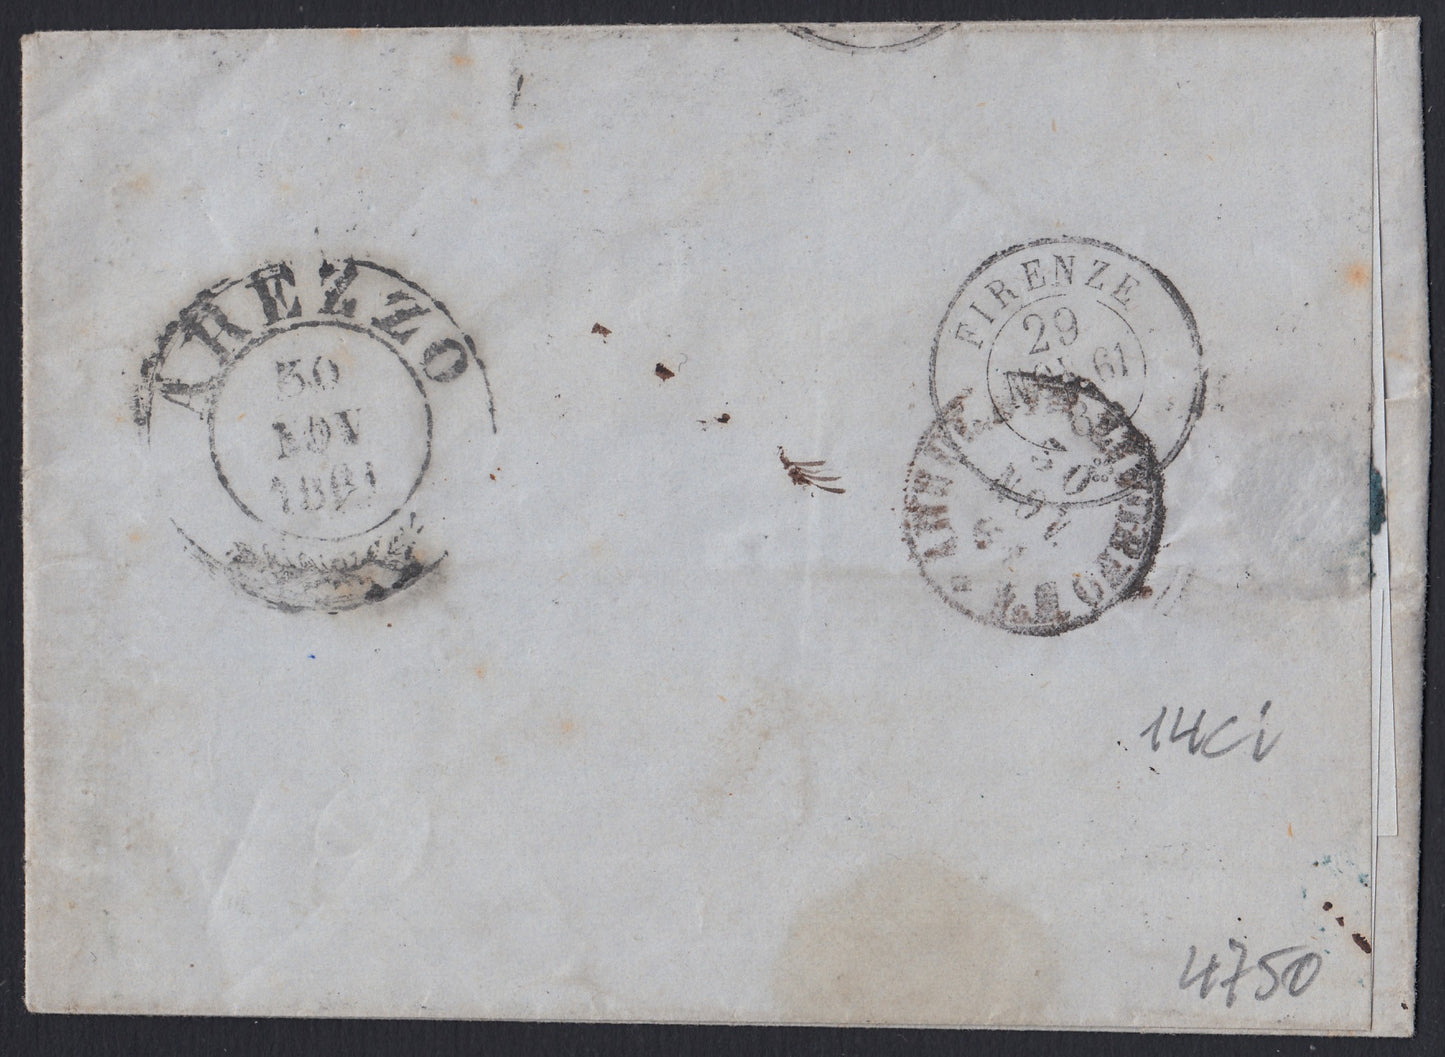 184 - 1861 - Carta enviada desde Pistoia a Arezzo el 29/11/61 franqueada con c. 10 mesa marrón chocolate oscuro II. (14Ci).